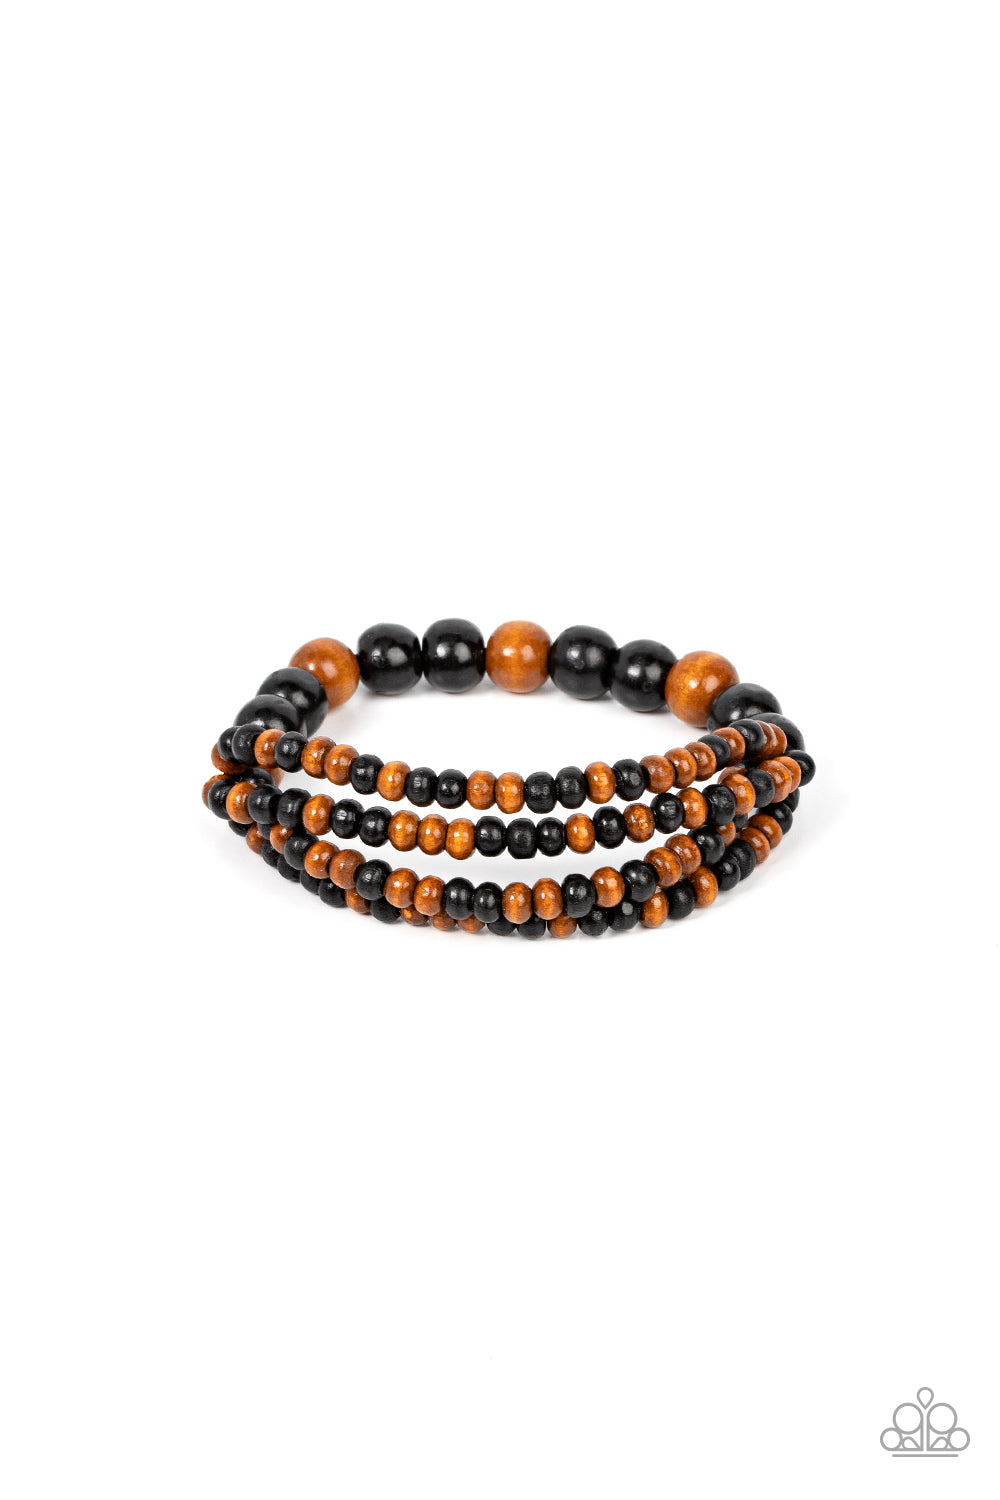 Oceania Oasis - Black/Brown wood bead bracelet